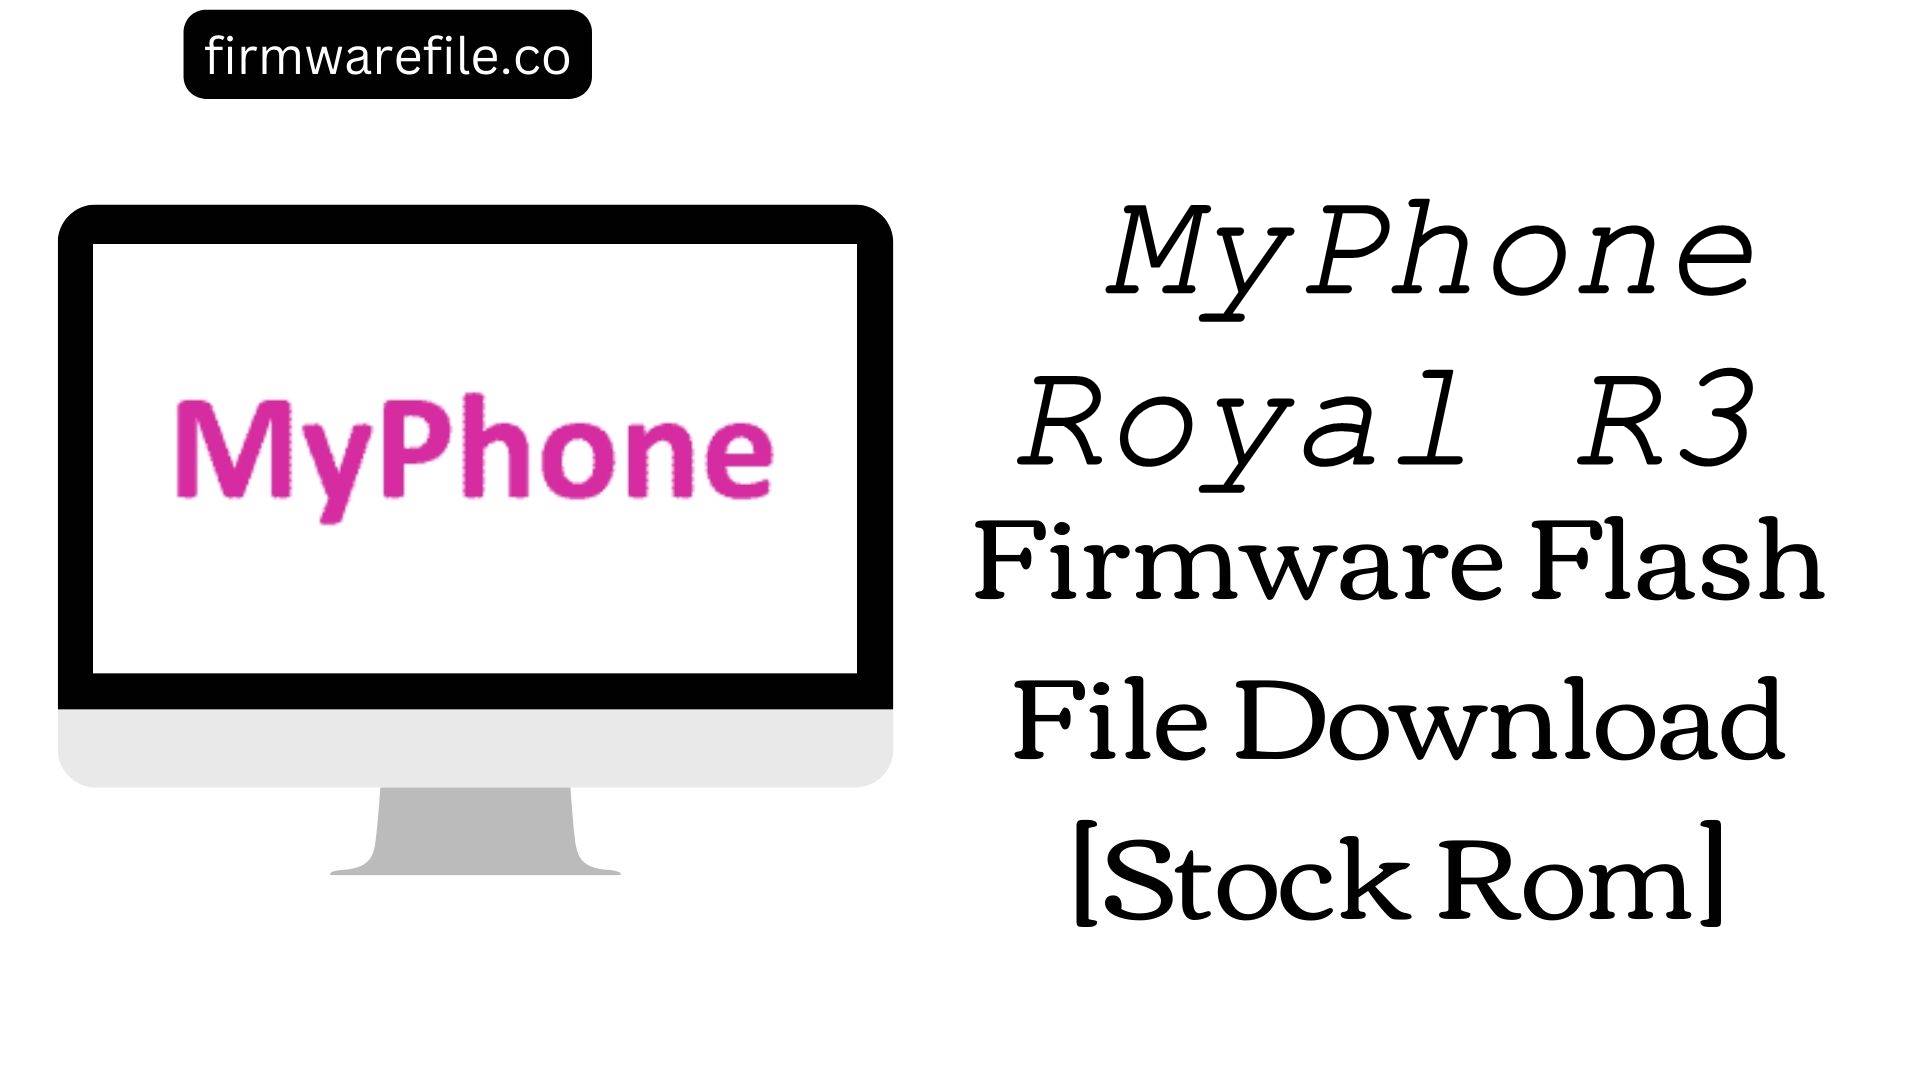 MyPhone Royal R3